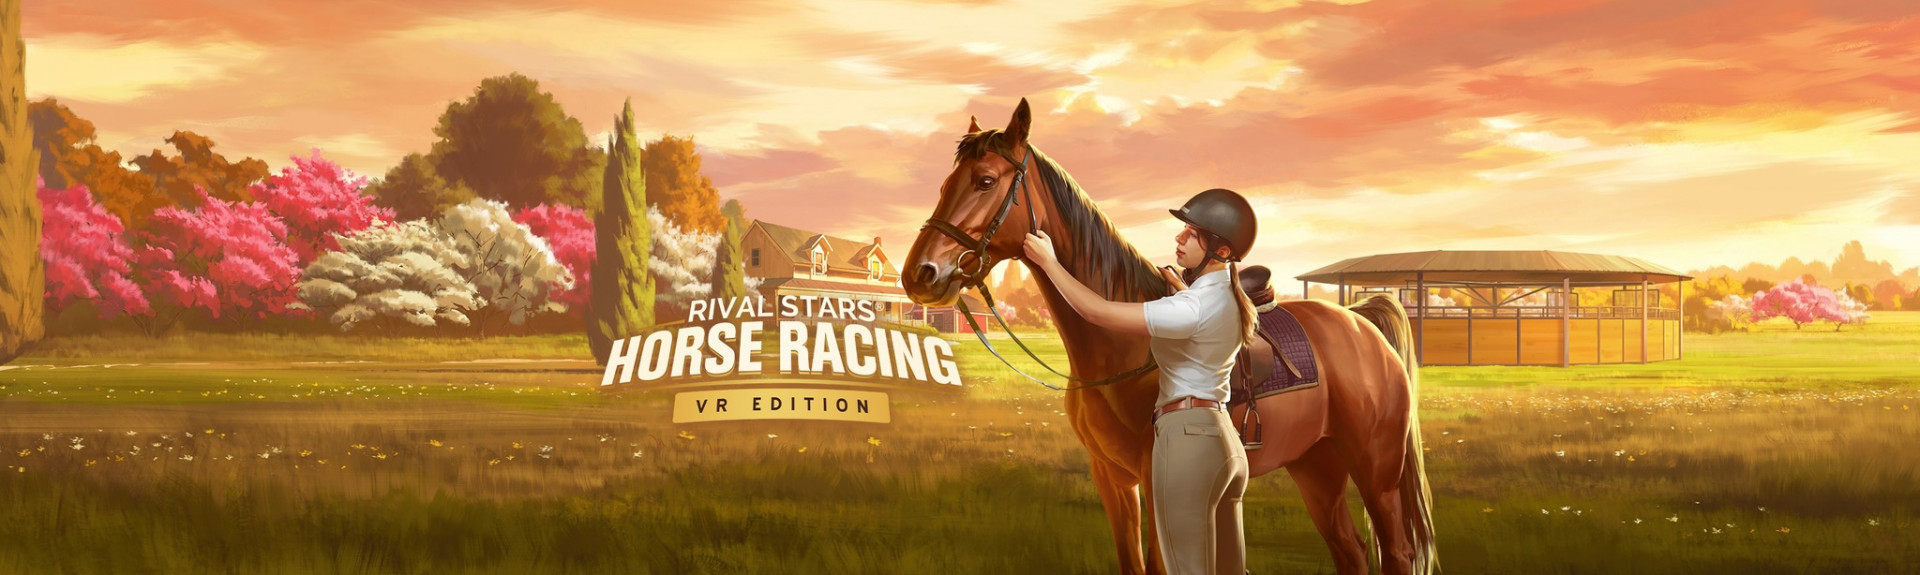 Cría caballos, entrena y compite con Rival Stars Horse Racing: VR Edition